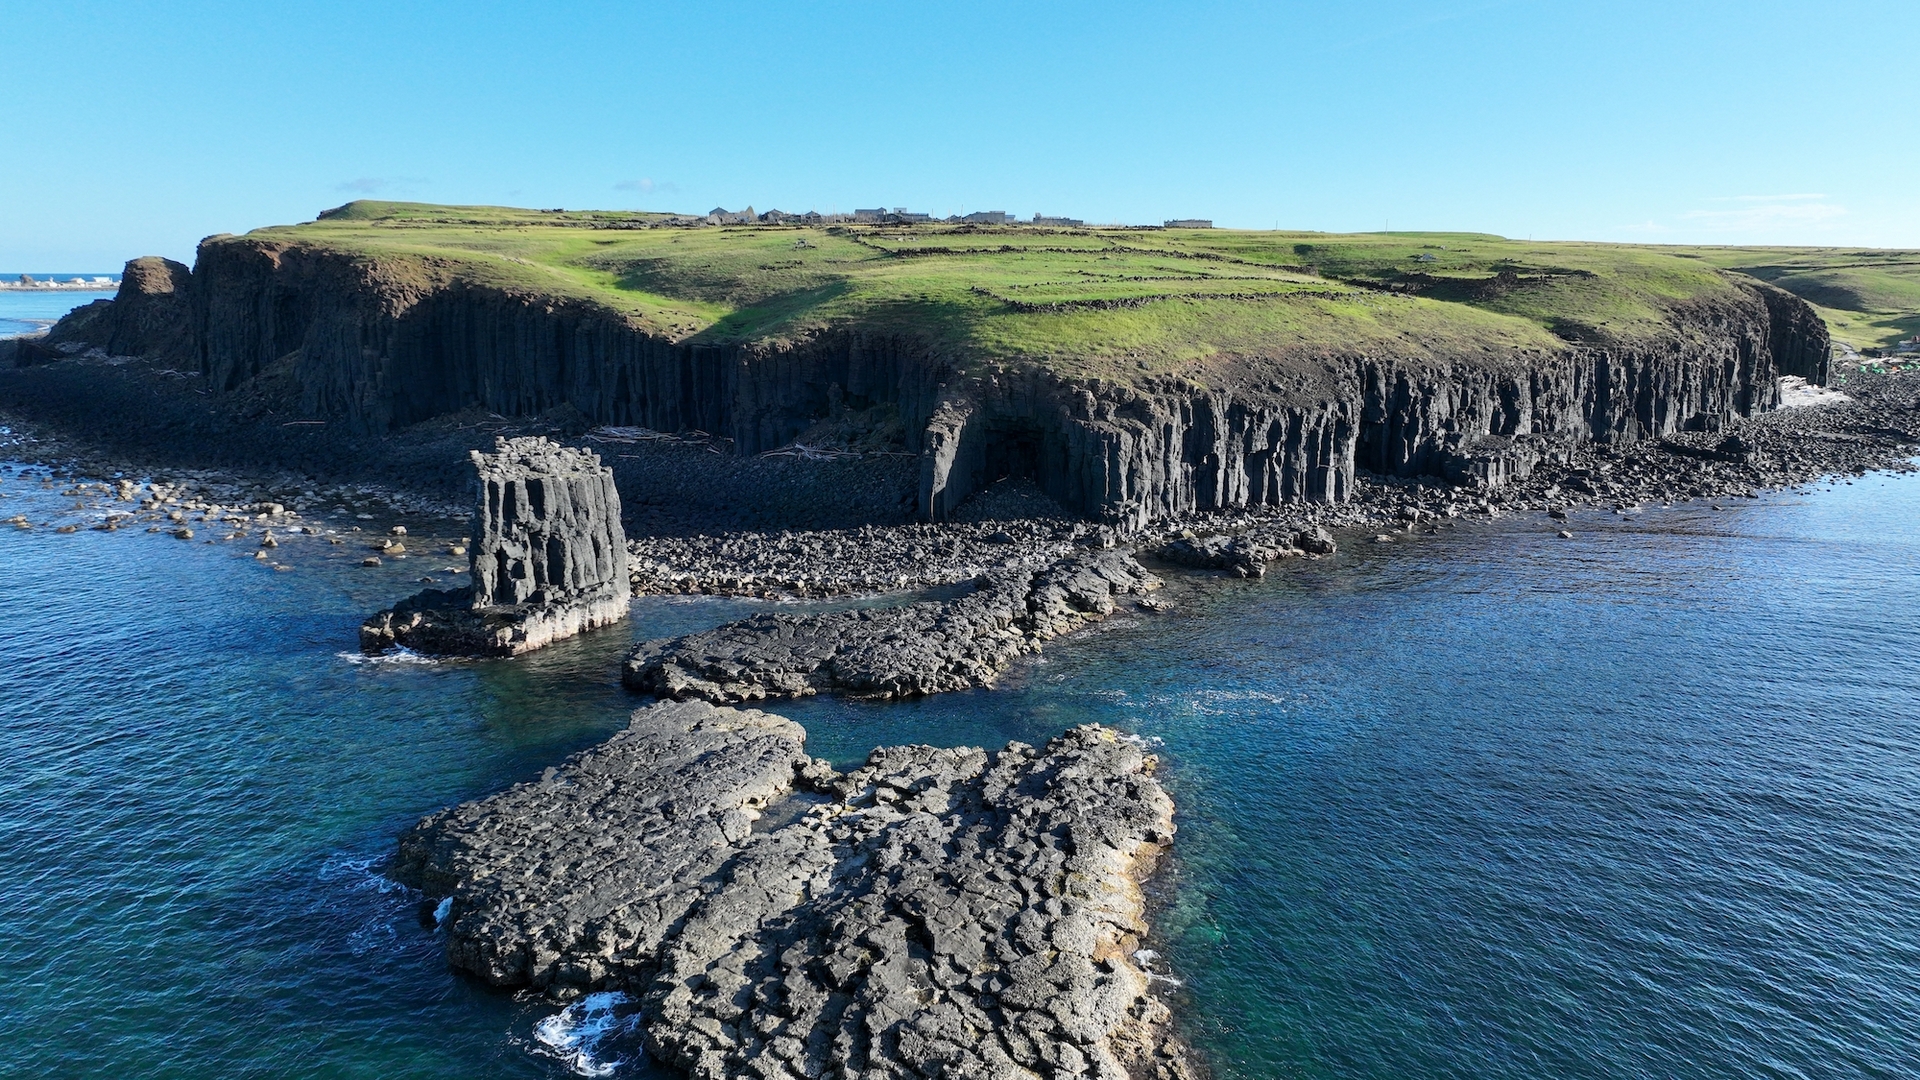 澎湖南方四島，常可見壯觀的柱狀玄武岩，是千萬年前火山作用形成的獨特容顏。（圖片由活水文化事業有限公司提供）